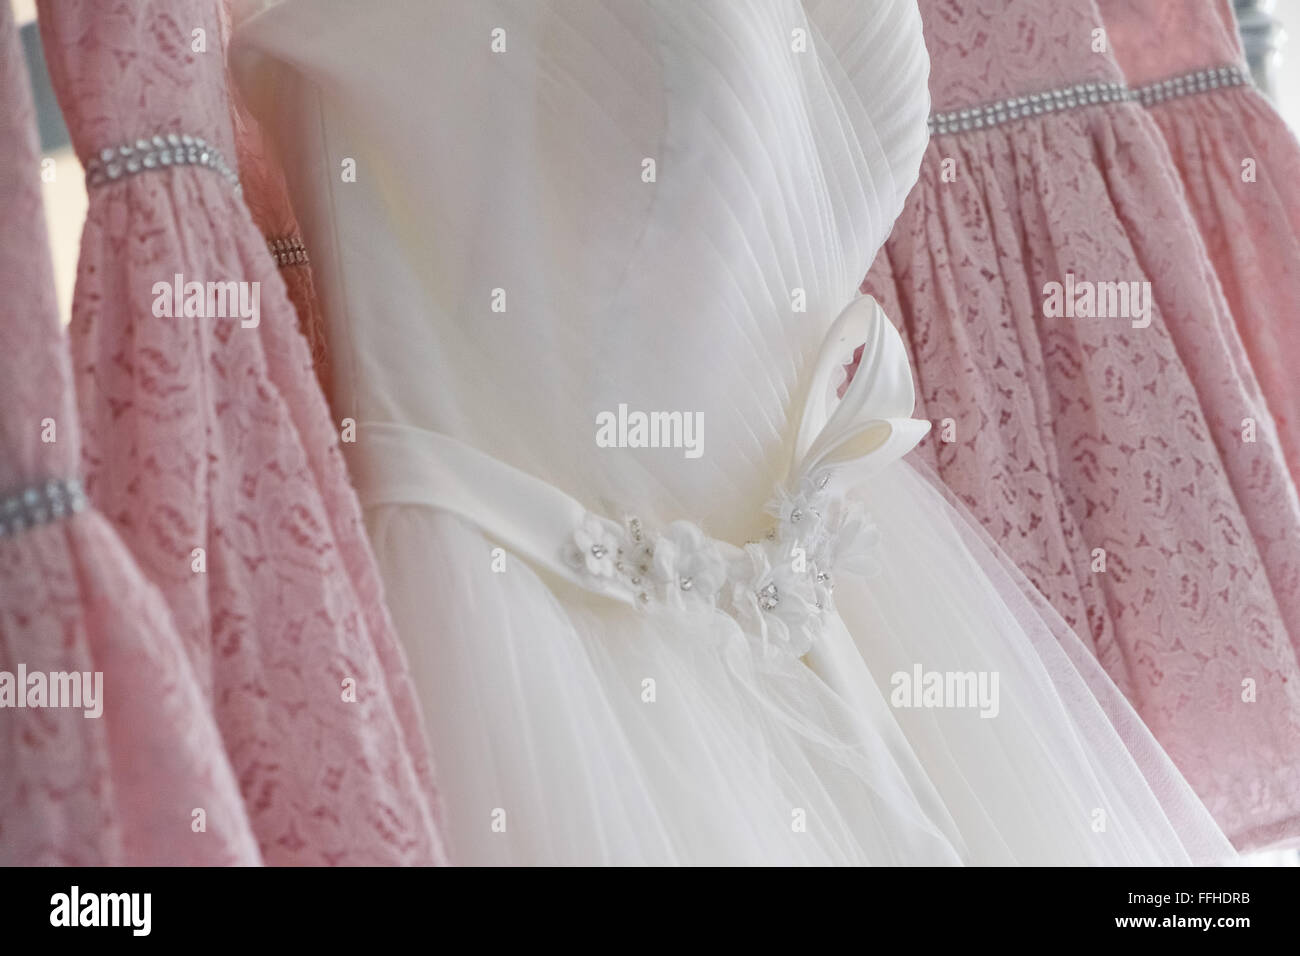 Eine traditionelle weiße Hochzeit Kleid hing unter vier rosa Brautjungfern Kleider Stockfoto